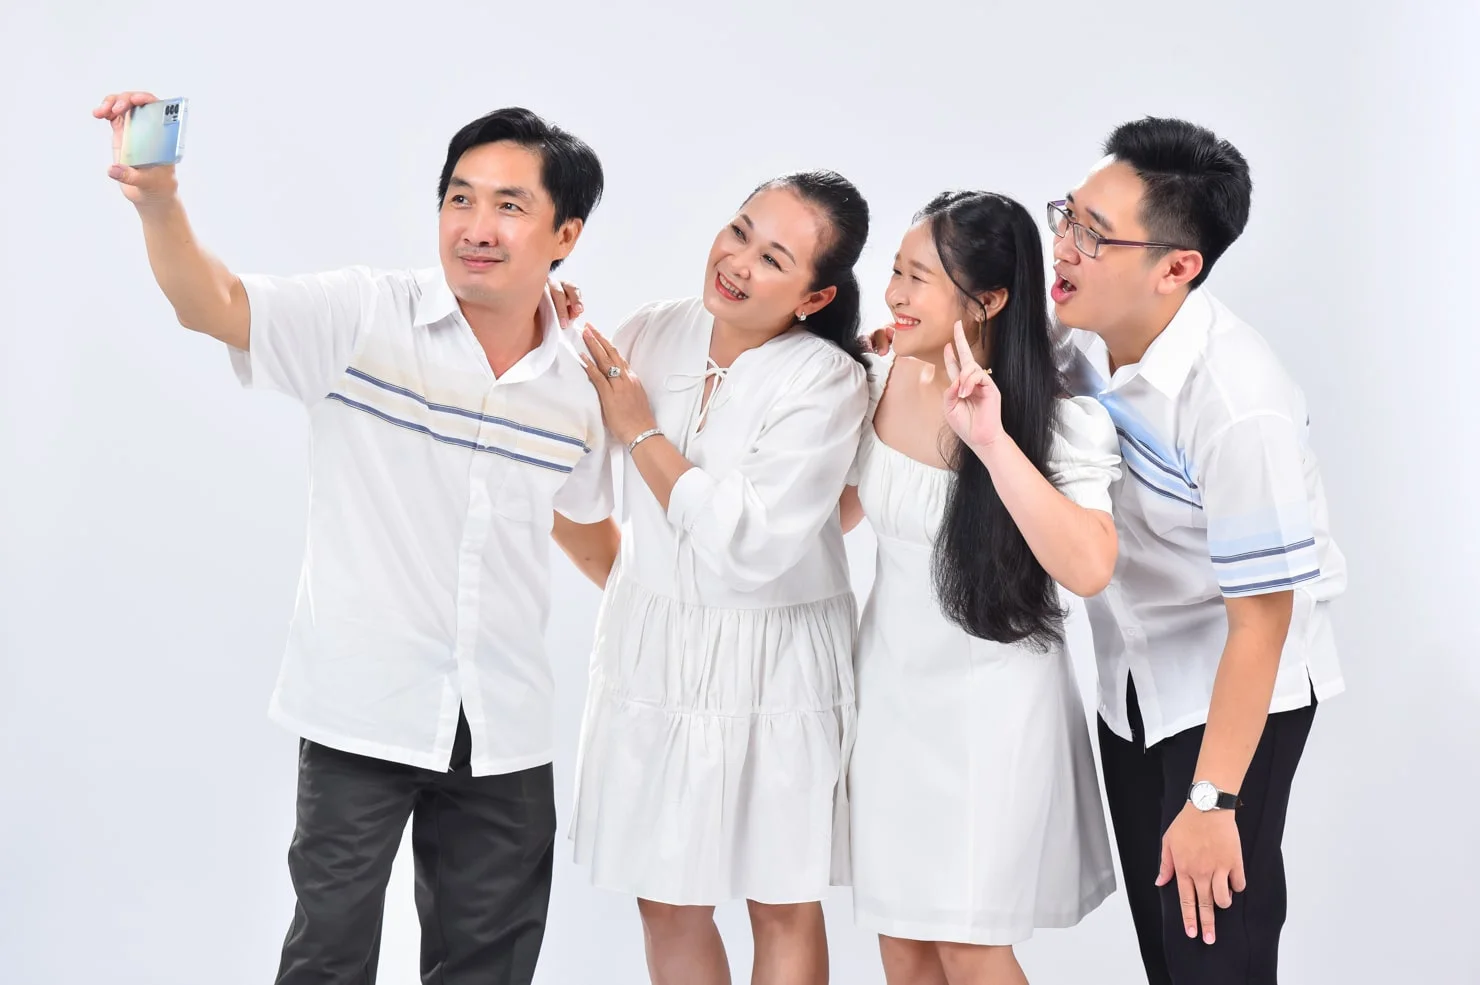 Anh gia dinh 10 min - Chụp ảnh gia đình 4 người trong studio đáng yêu - HThao Studio